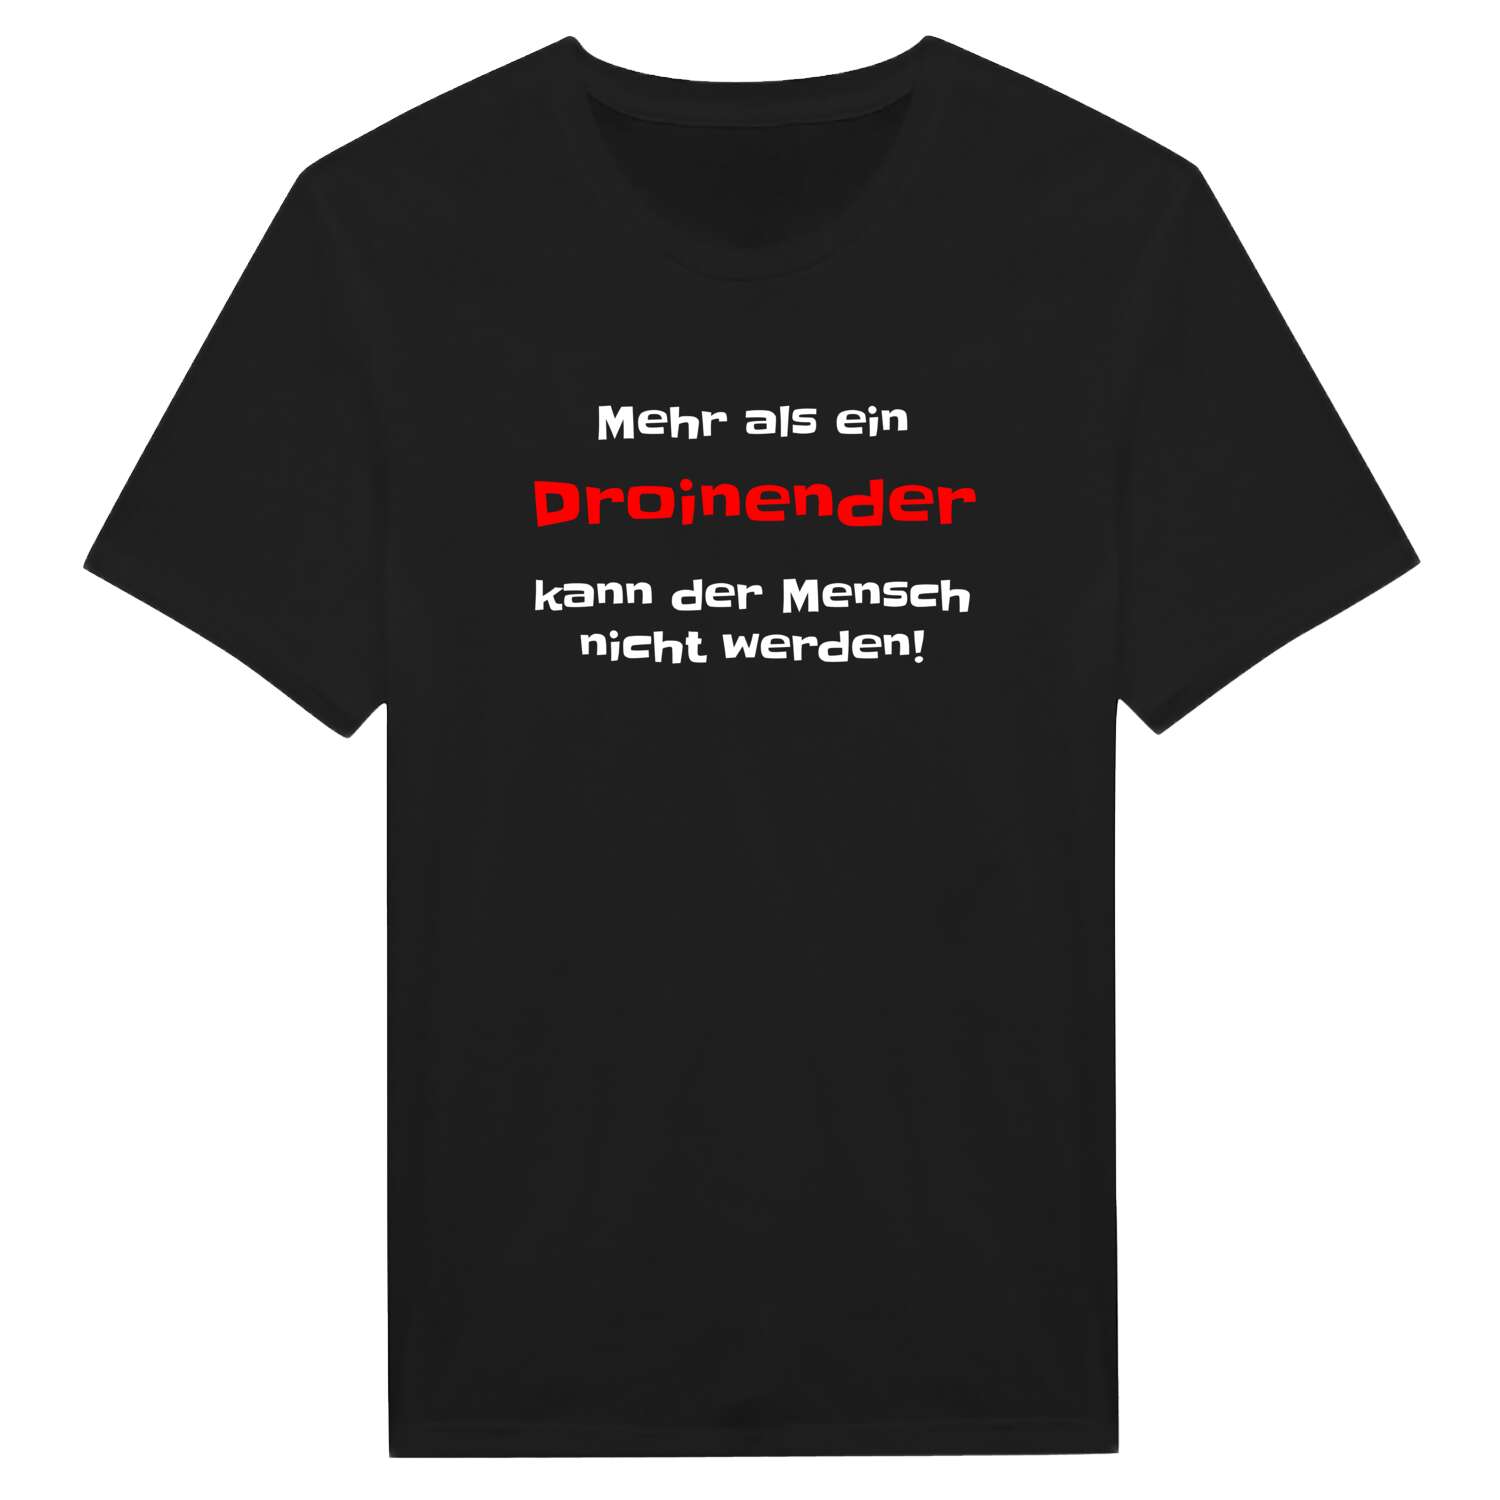 Droinend T-Shirt »Mehr als ein«